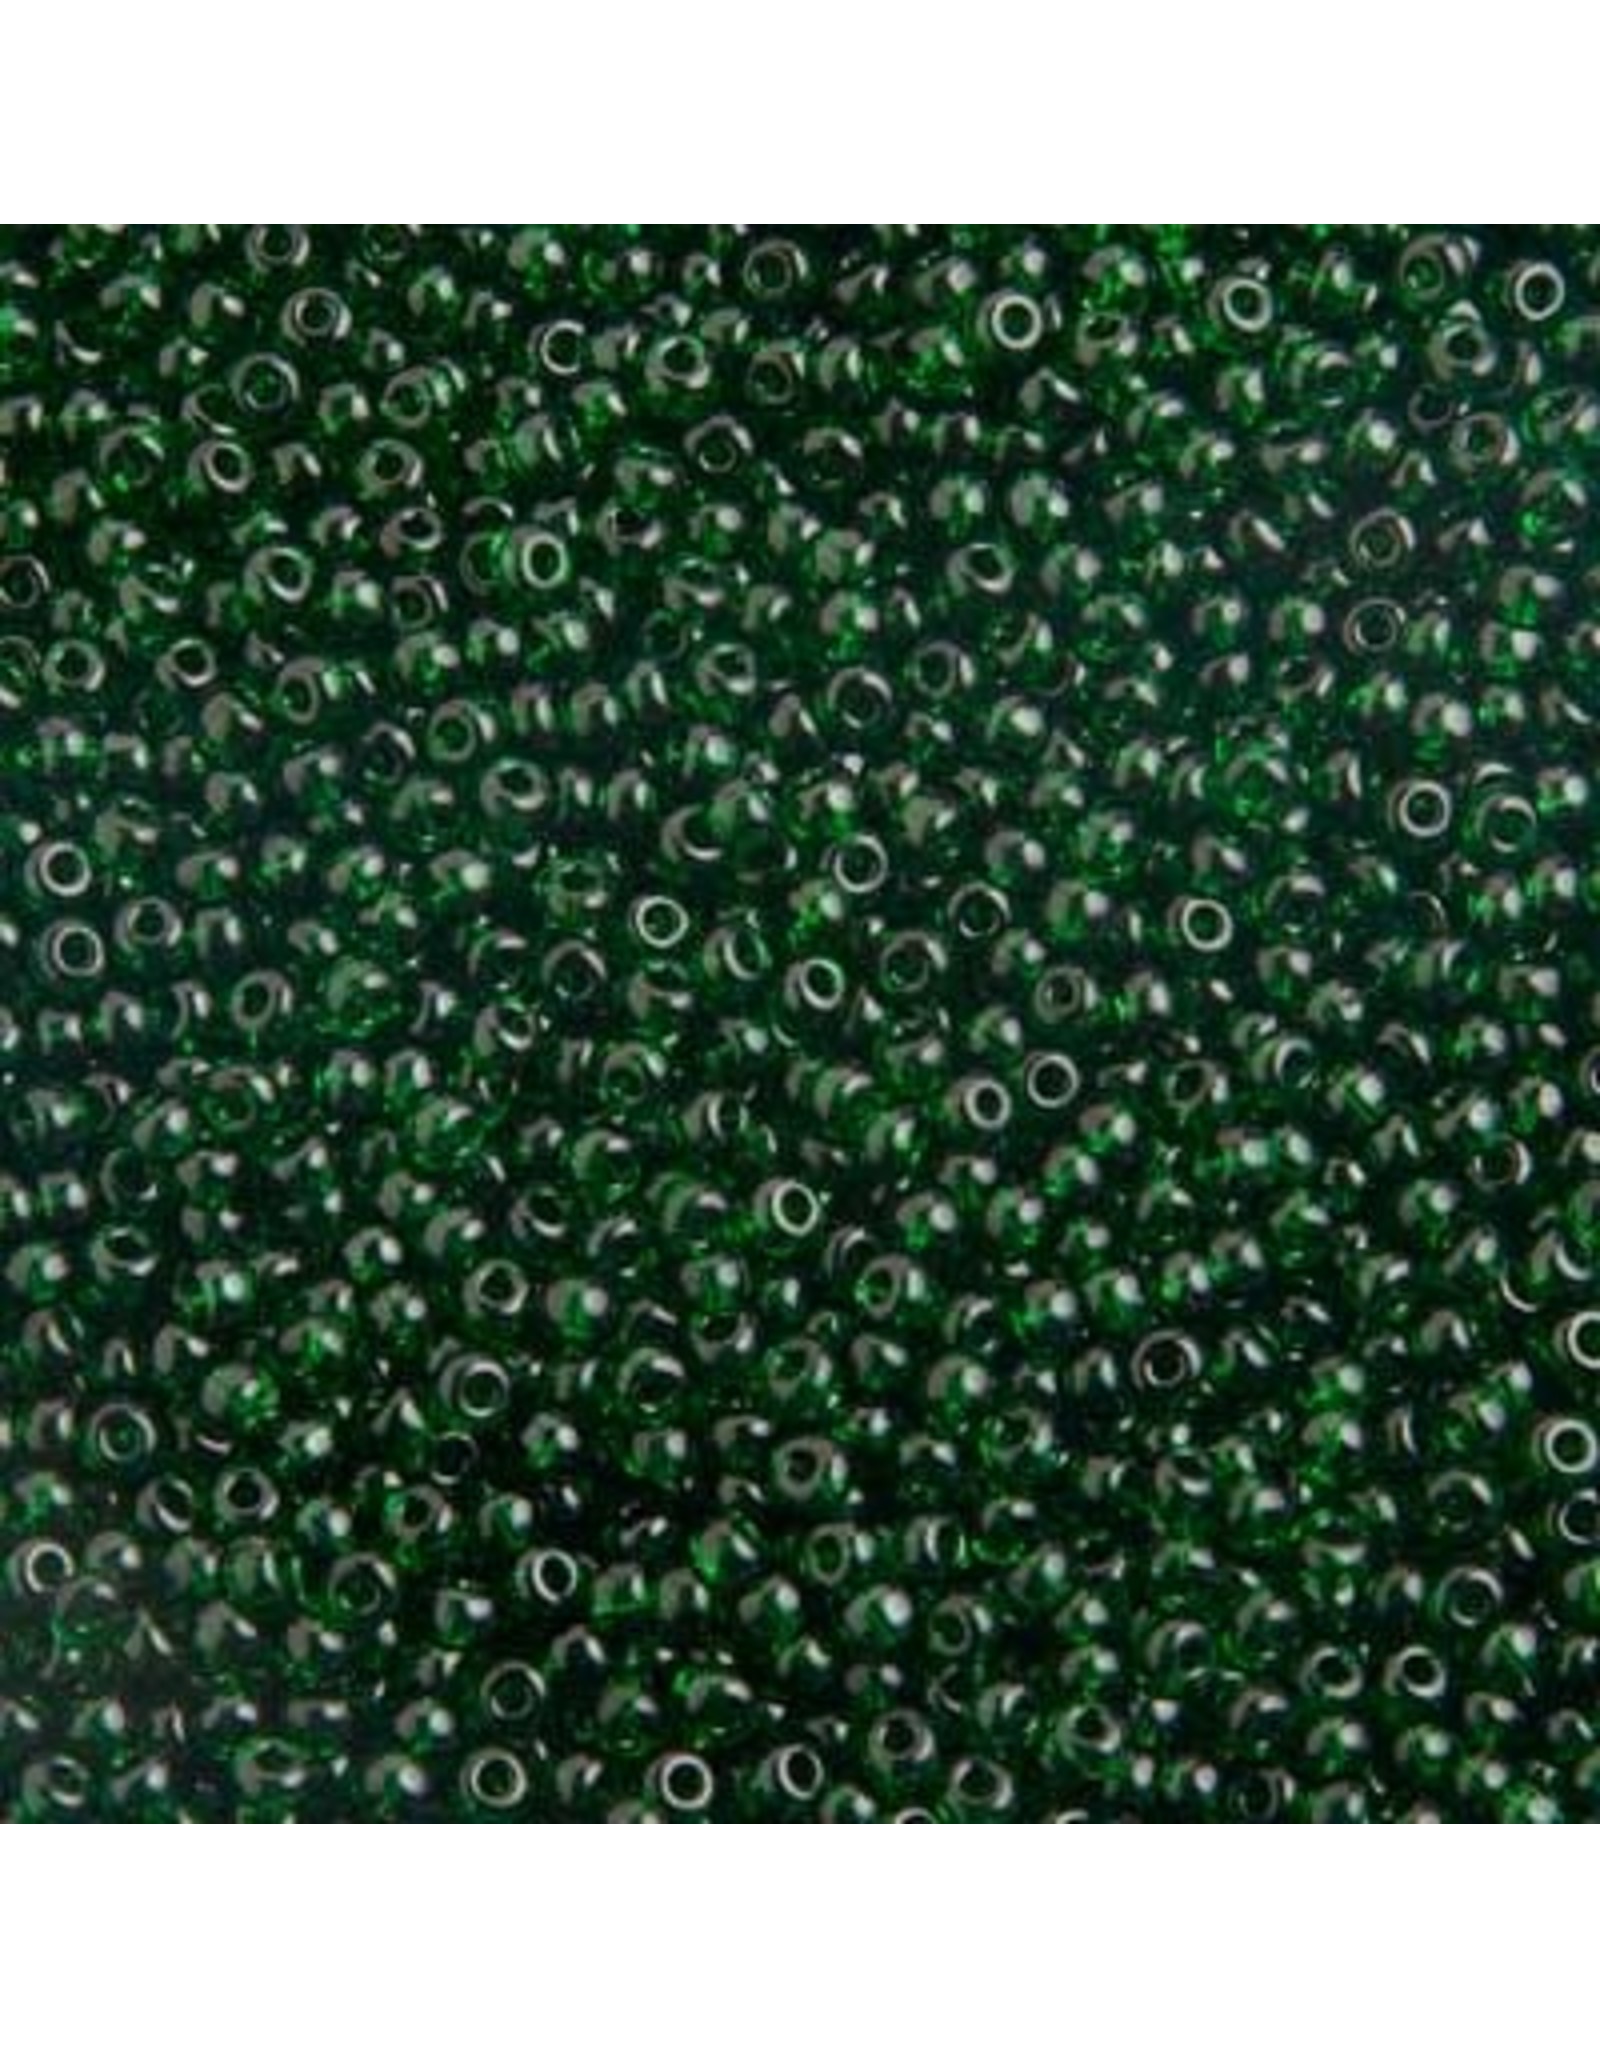 Czech 401029  6   Seed 20g  Transparent Medium Green